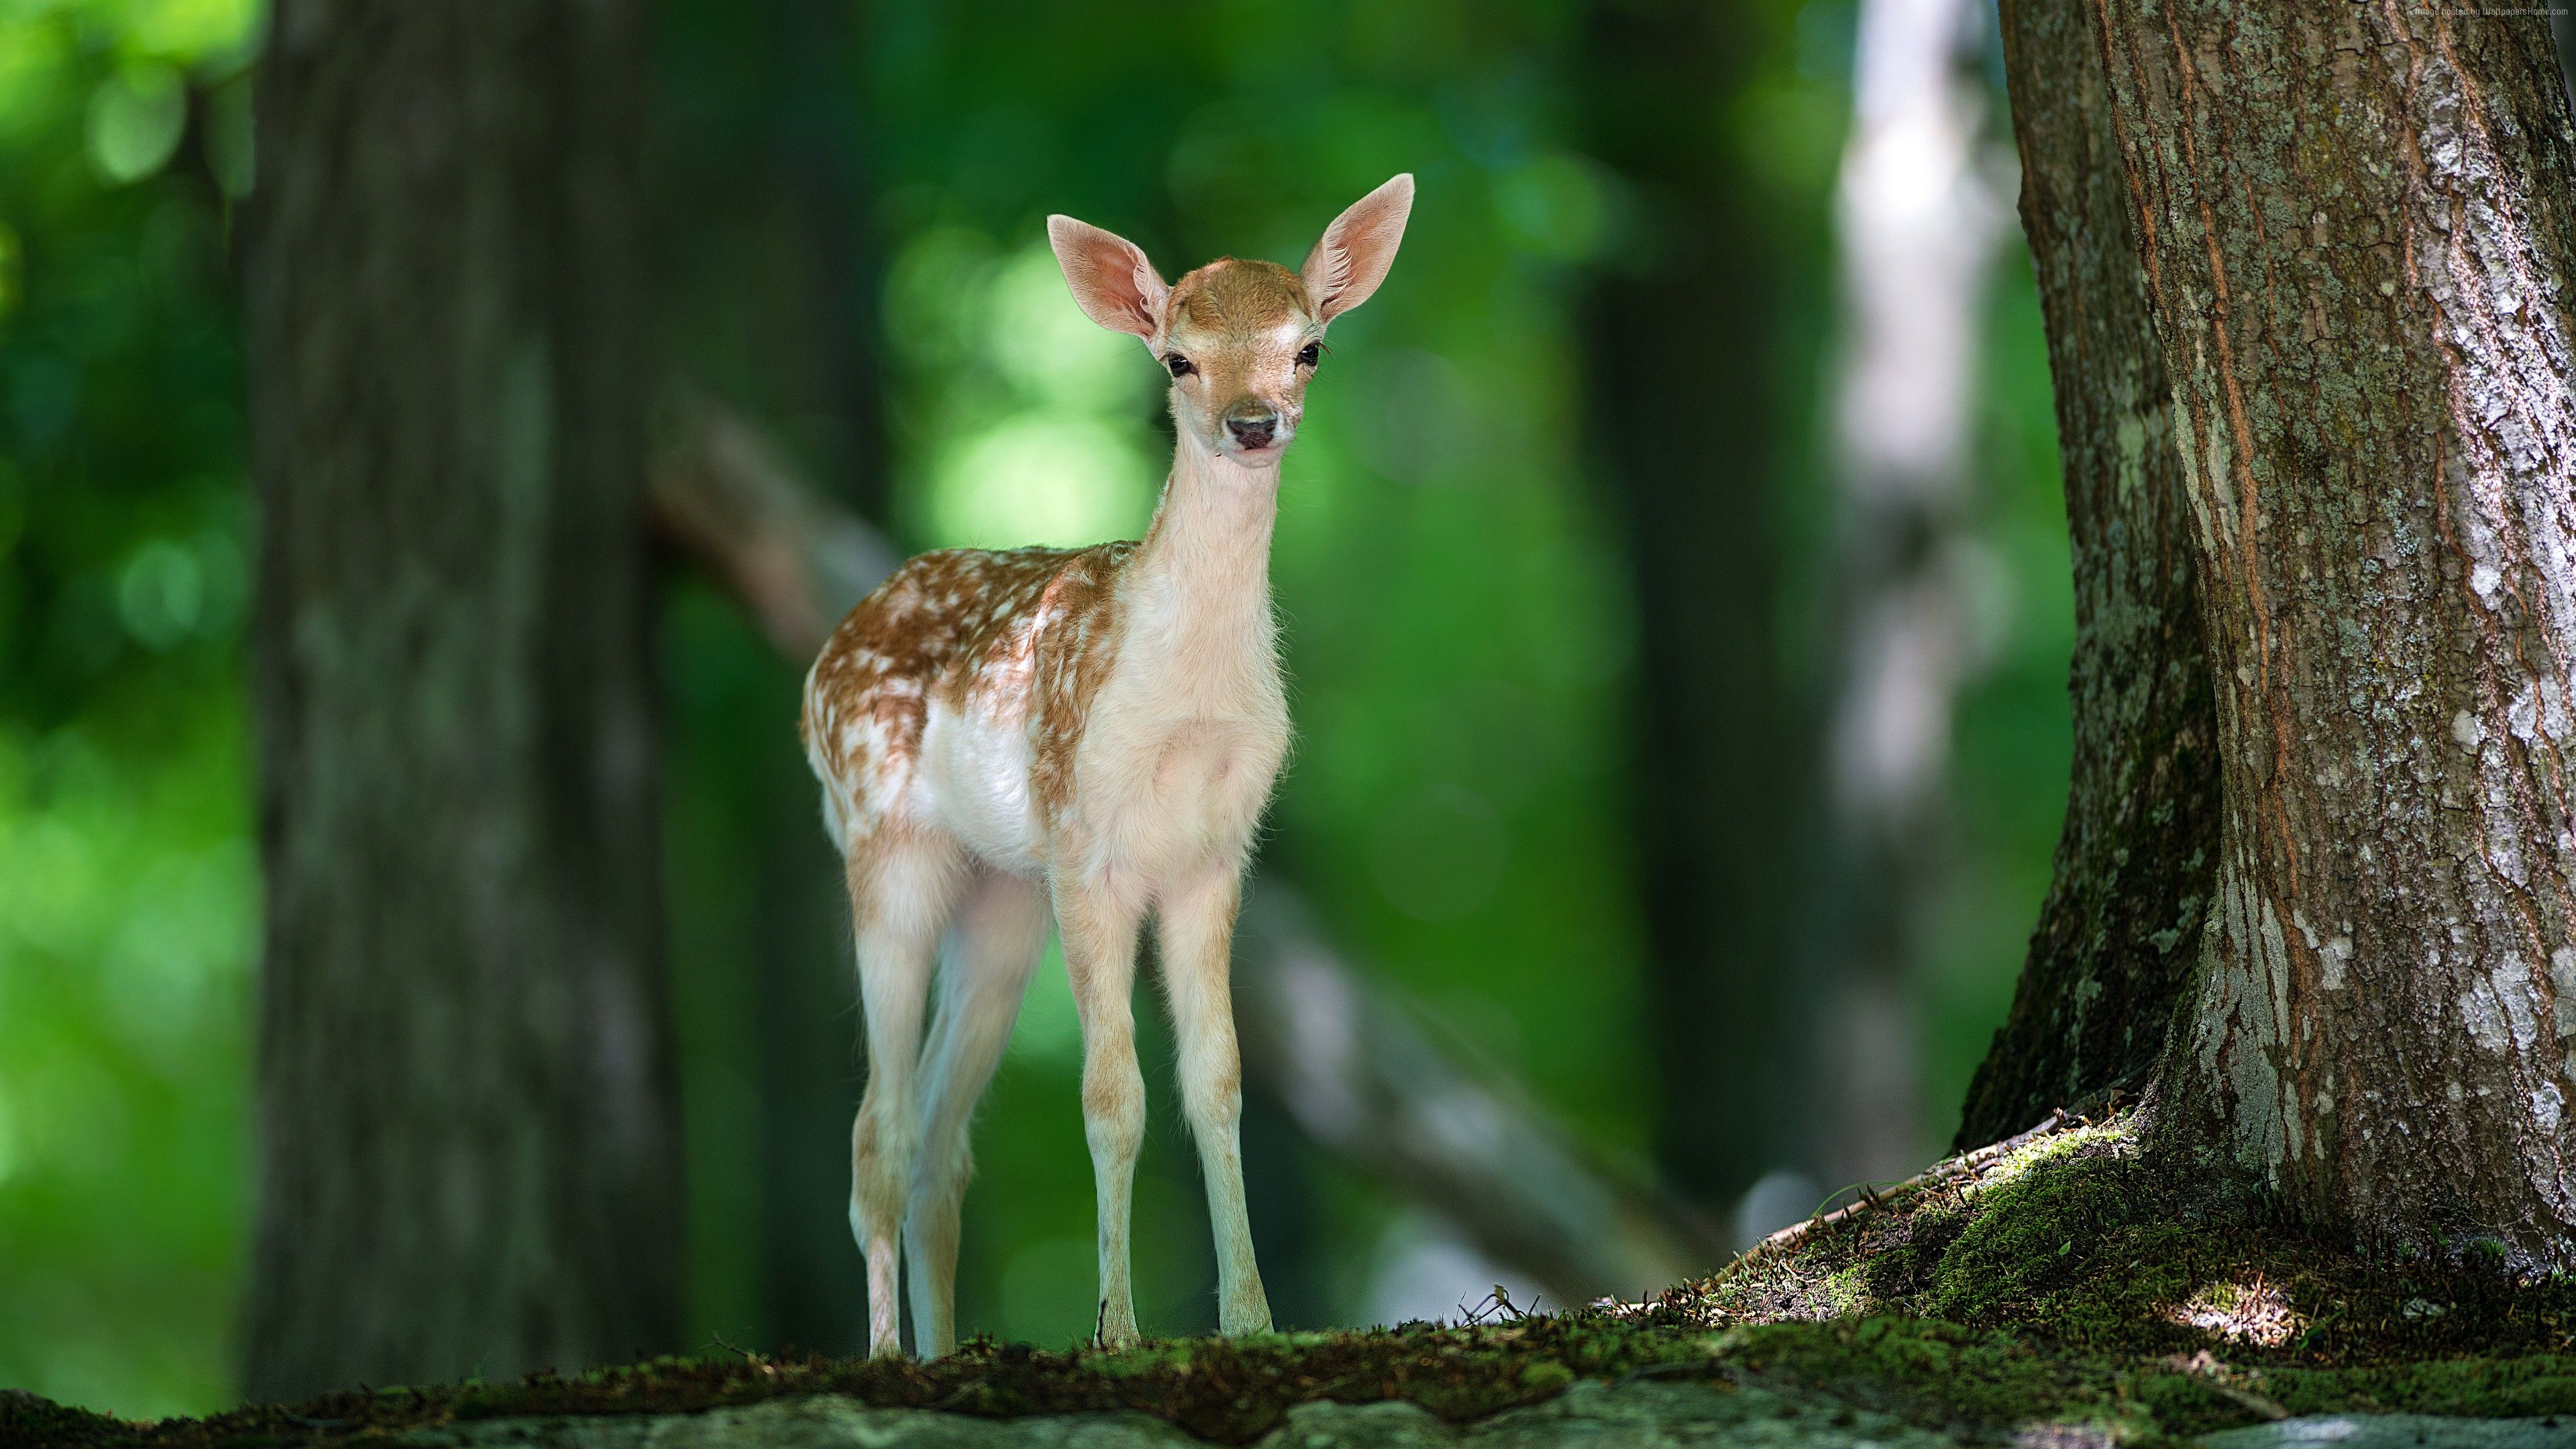 Wallpaper Deer, cute animals, forest, Animals Wallpaper Download Resolution 4K Wallpaper